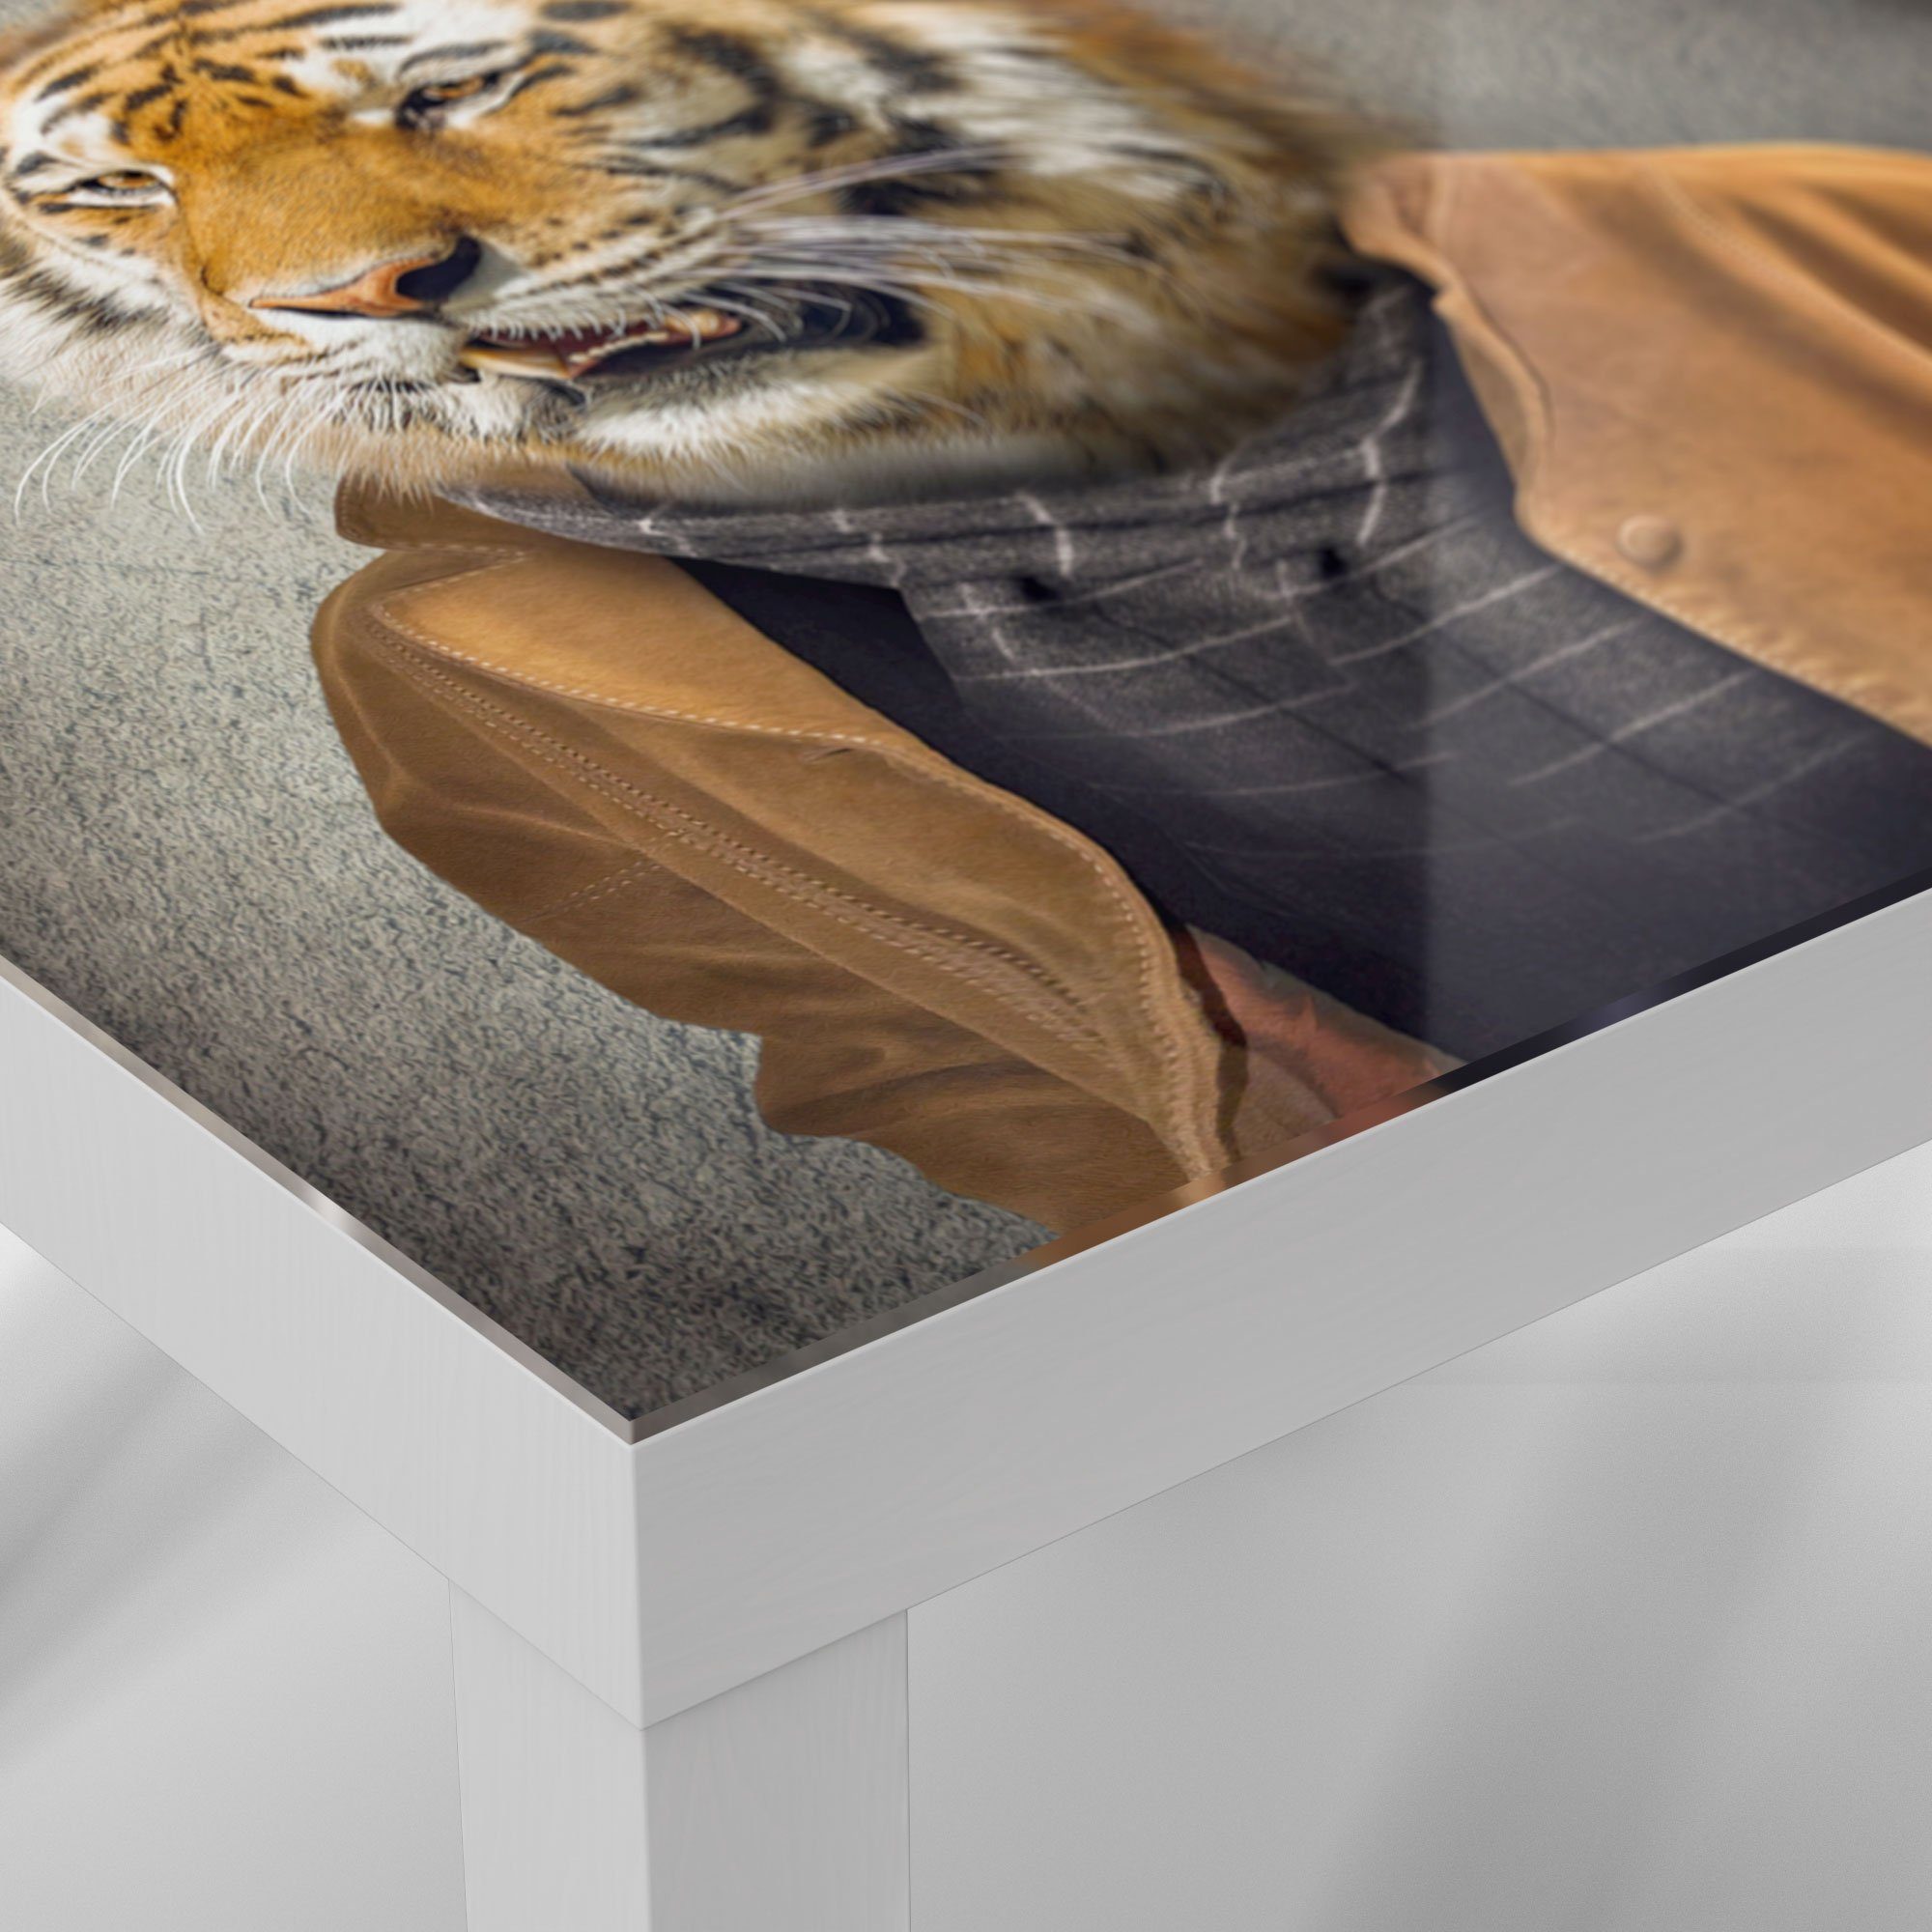 Menschengestalt', Glas Glastisch Couchtisch Weiß 'Tiger in Beistelltisch DEQORI modern